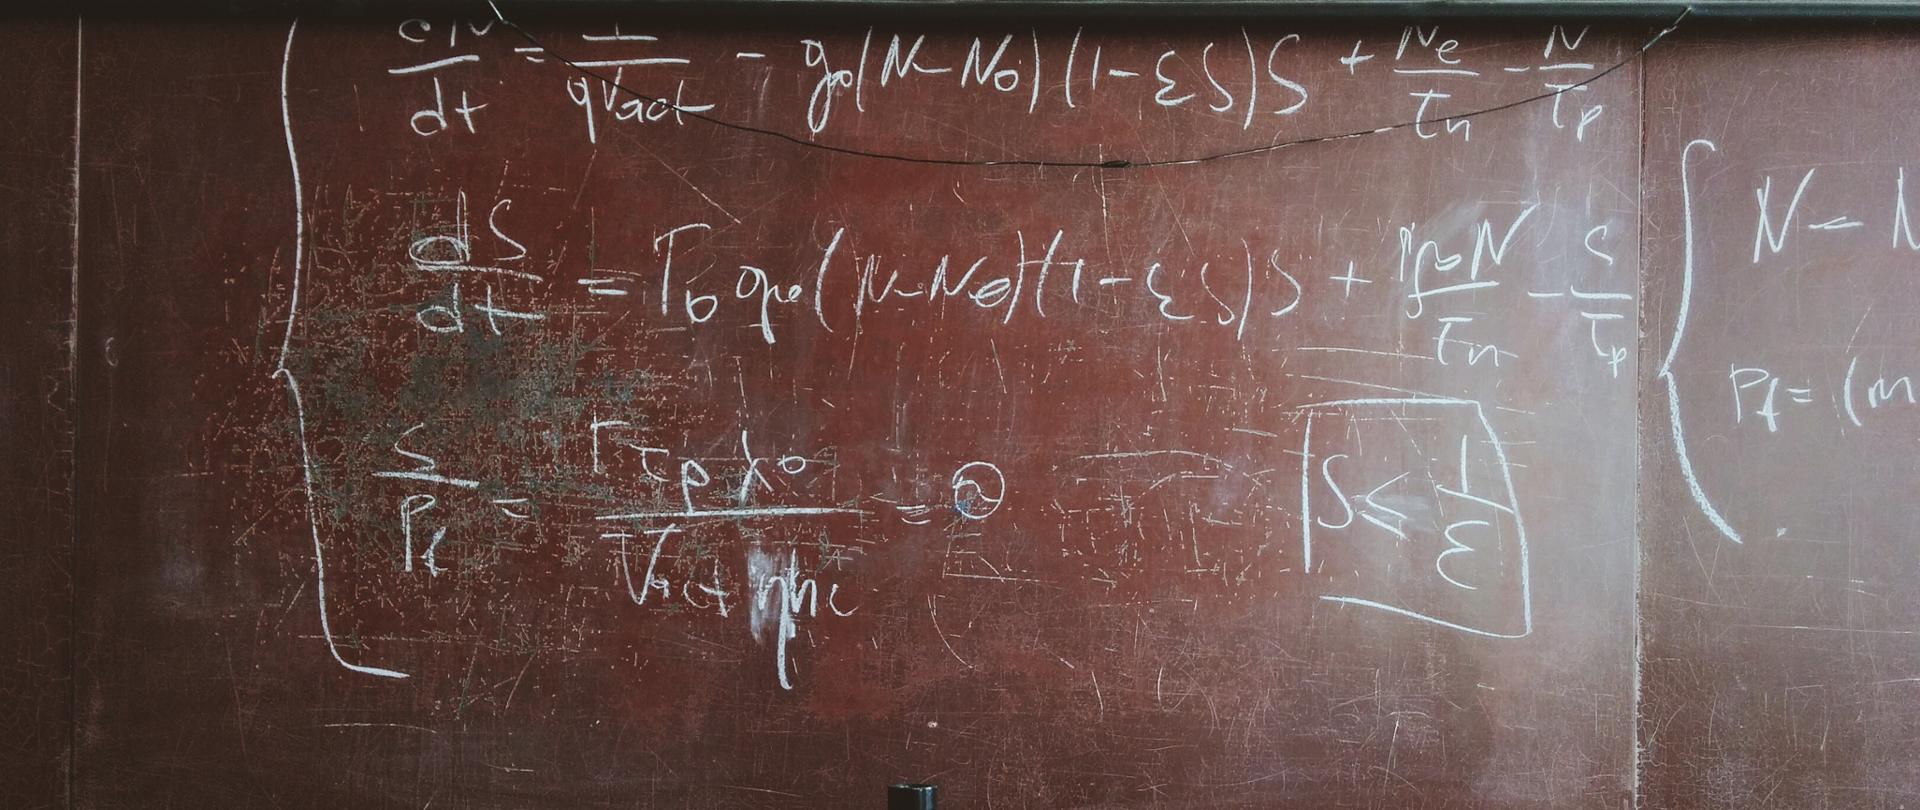 tablica szkolna z napisanym białą kredą działaniem matematycznym